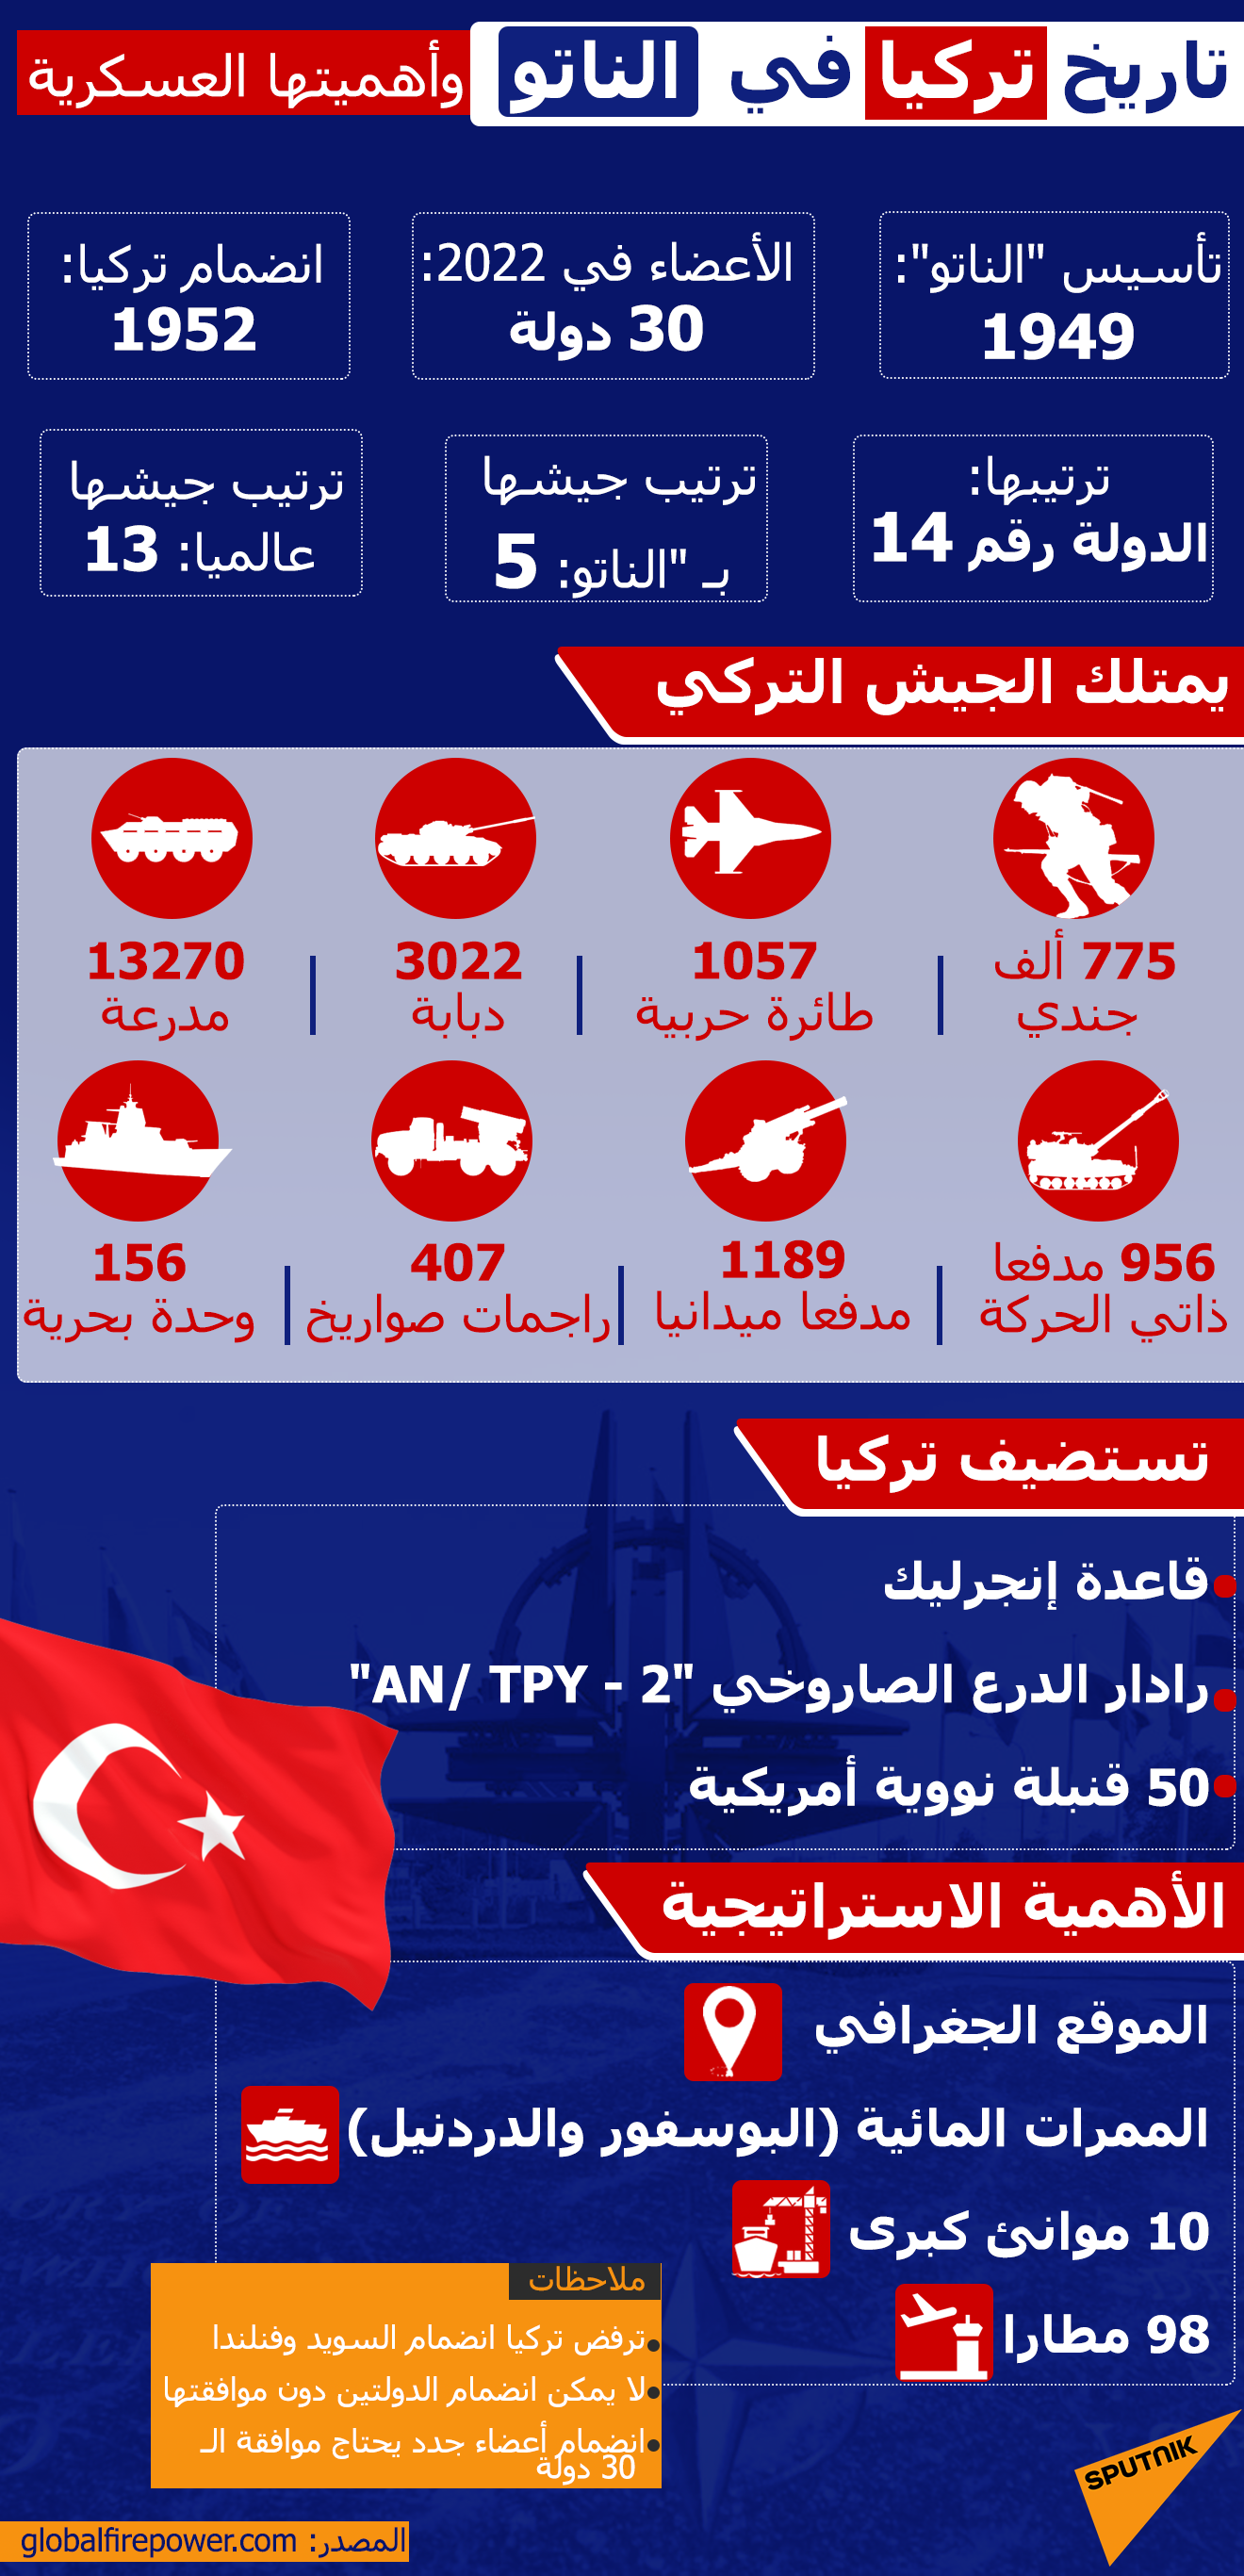 تاريخ تركيا في الناتو وأهميتها العسكرية - سبوتنيك عربي